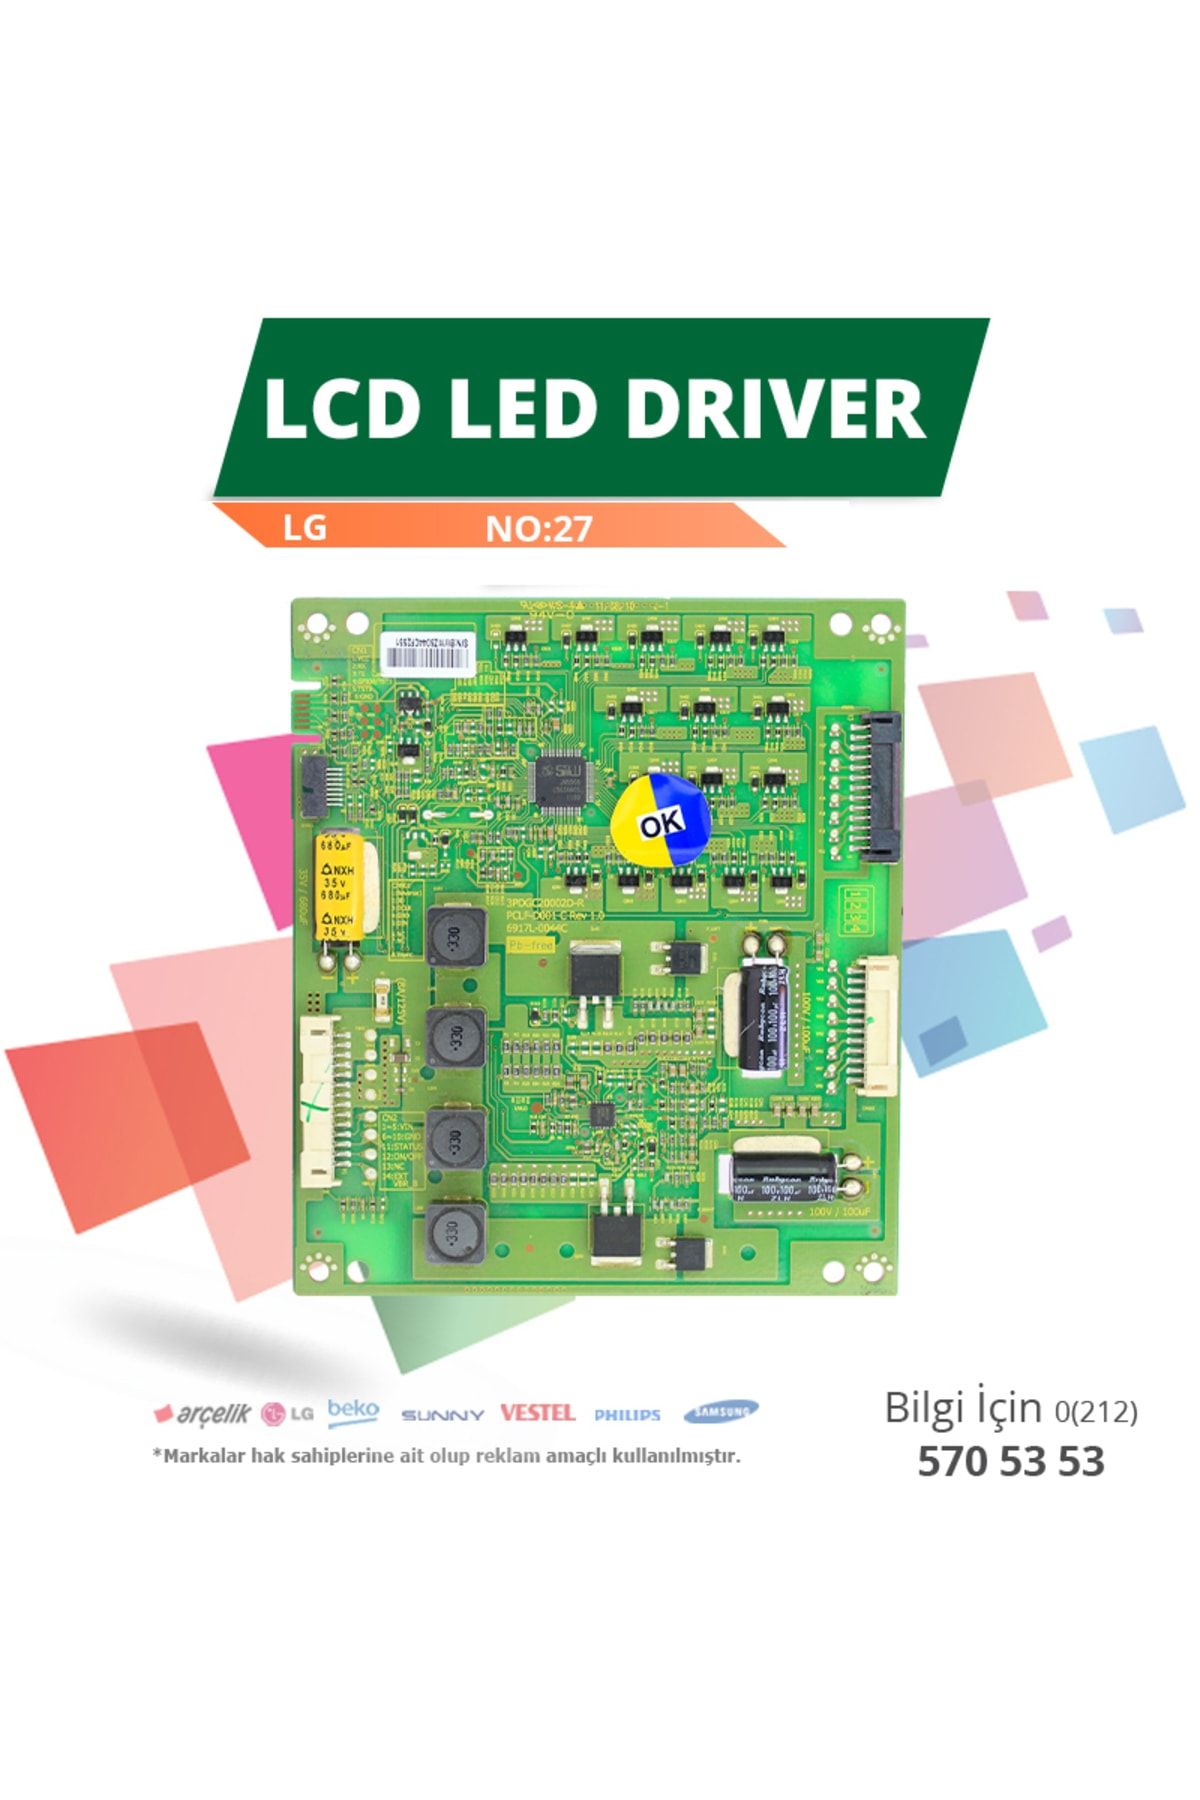 LG LCD LED DRIVER LG (6917L-0044C,3PDGC20002D-R) (LC420EUD SD M1) (NO:27)